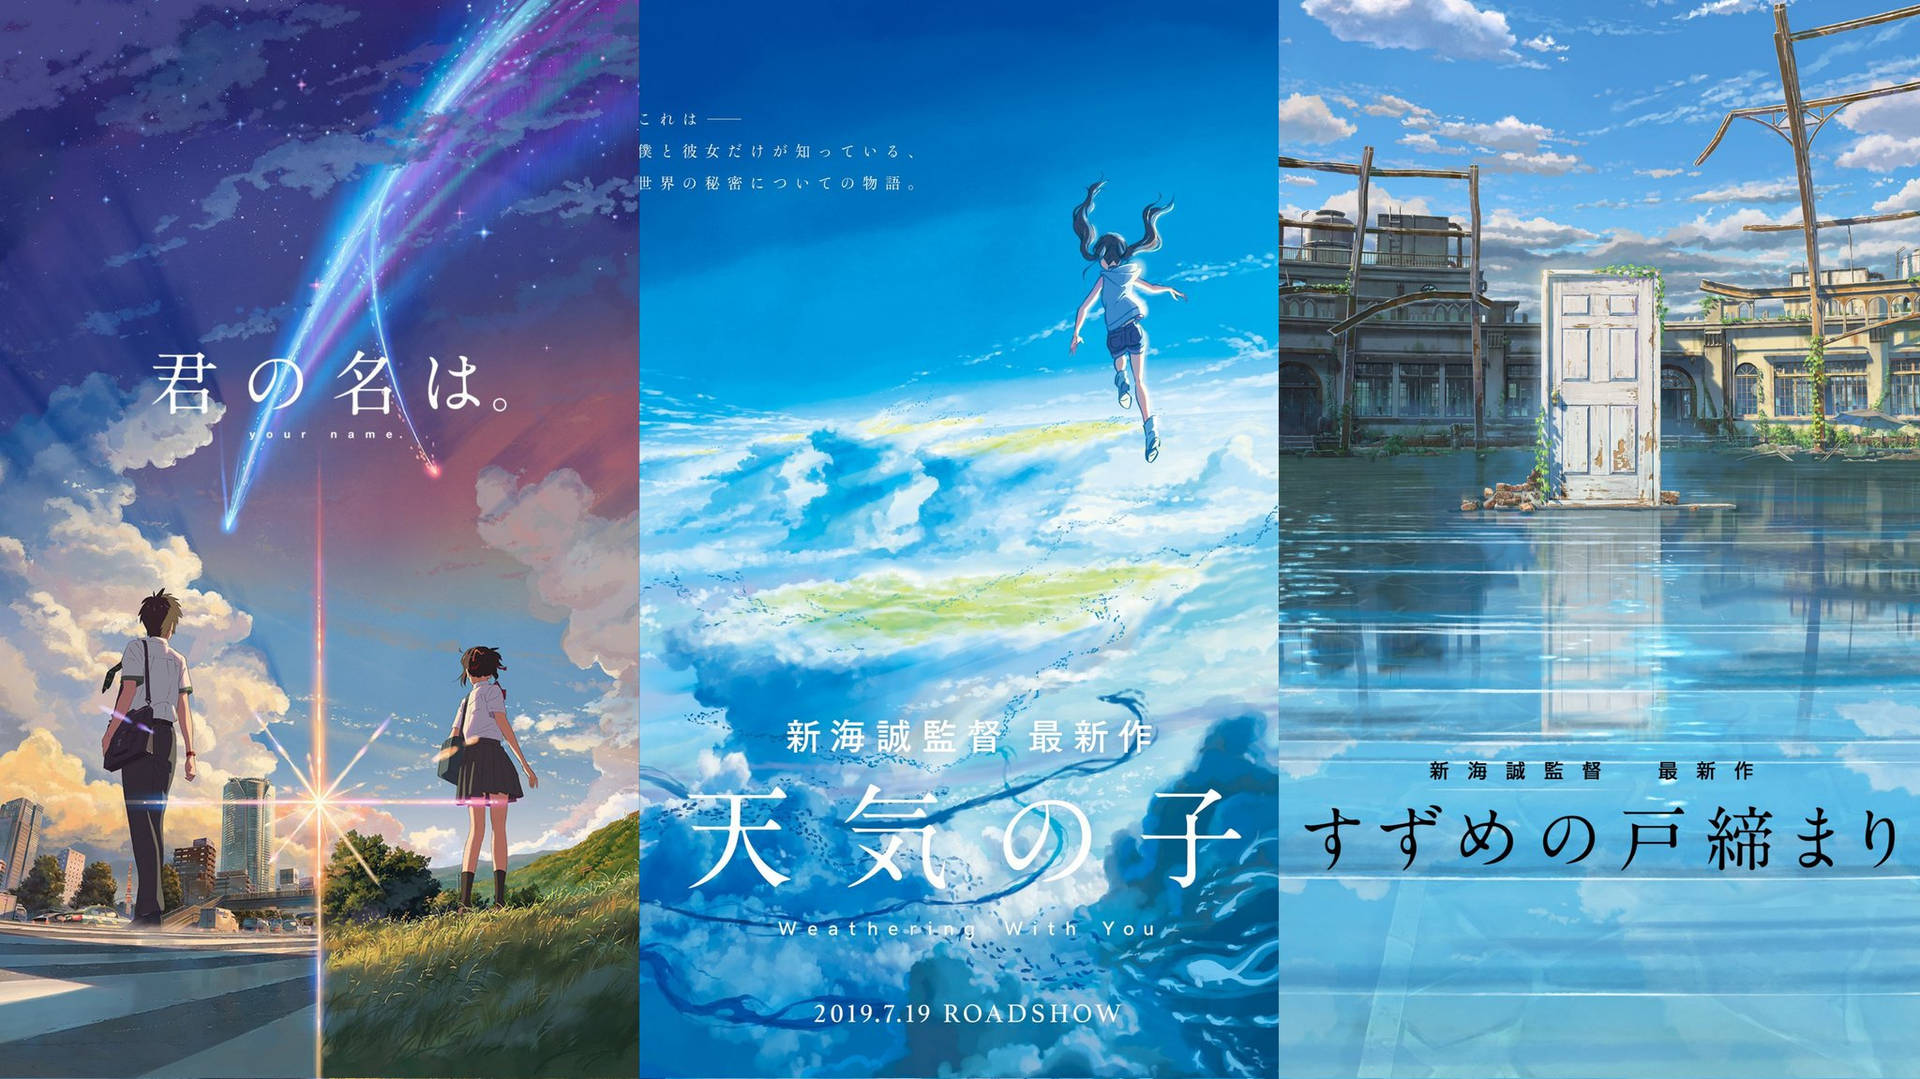 Makoto Shinkai's Film Posters Background